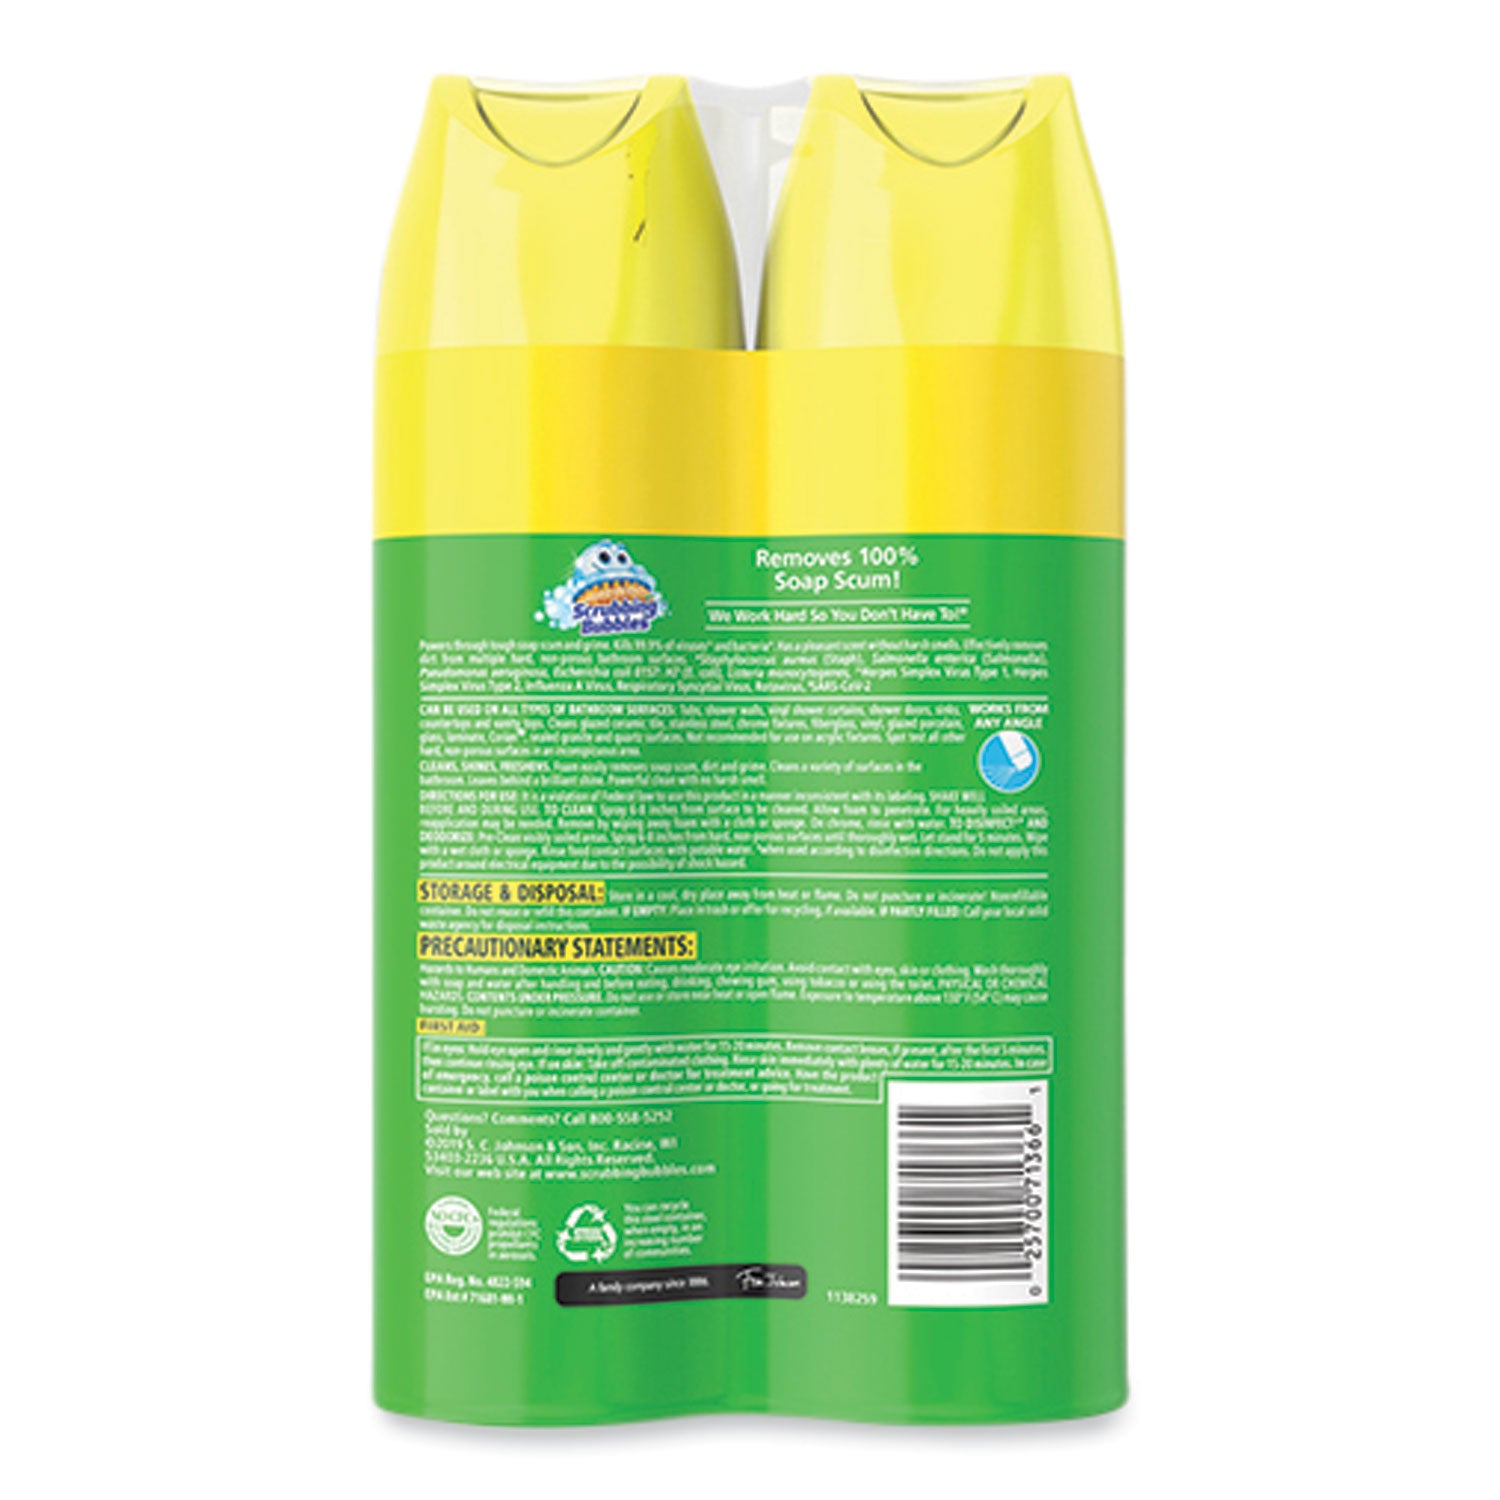 bathroom-disinfectant-grime-fighter-aerosol-citrus-scent-20-oz-aerosol-can-2-pack_sjn306381 - 2